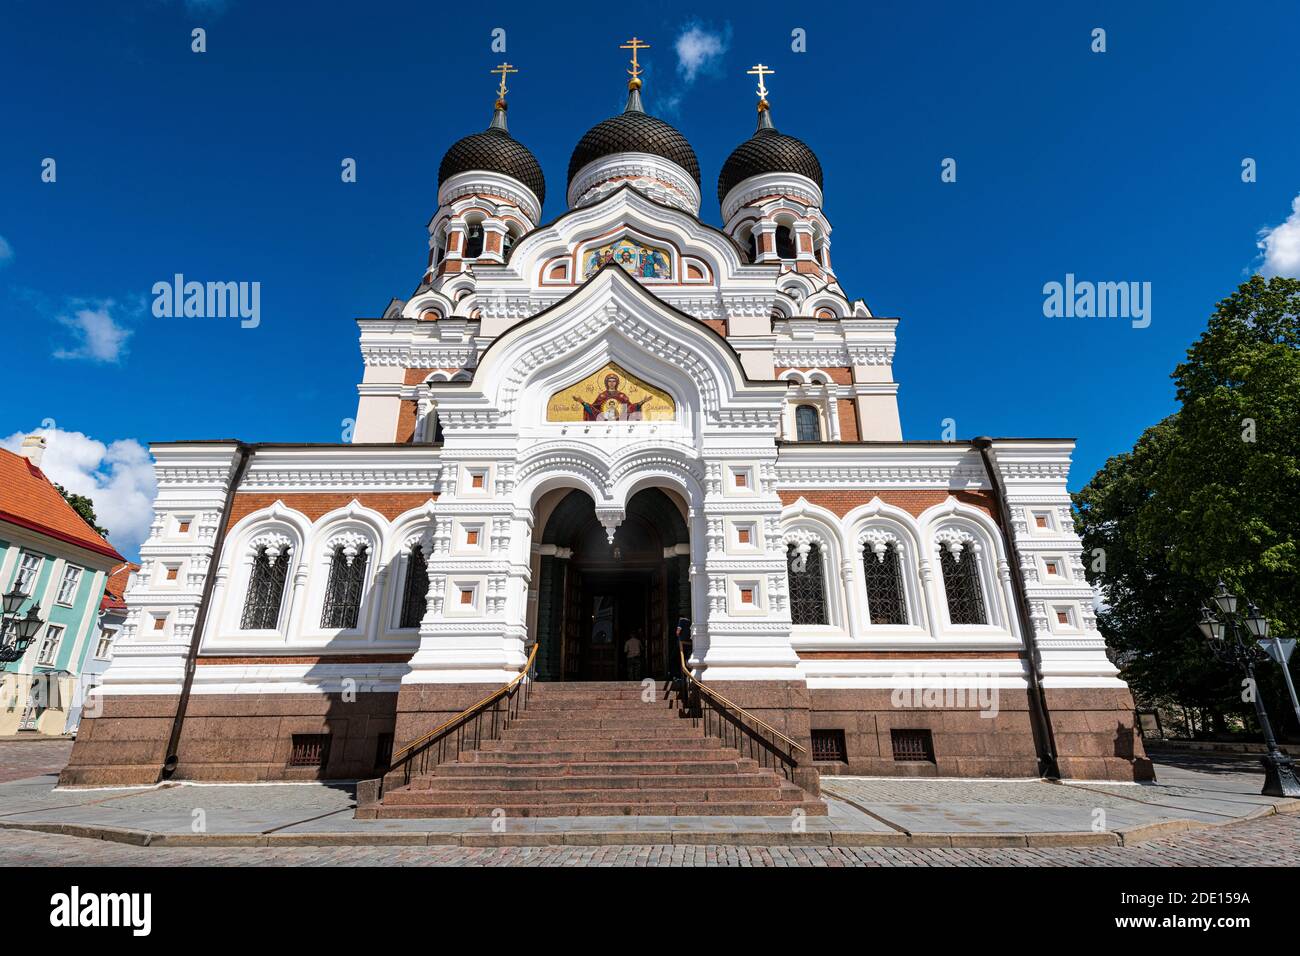 Cathédrale Alexander Nevsky, haute-ville, site classé au patrimoine mondial de l'UNESCO, Tallinn, Estonie, Europe Banque D'Images